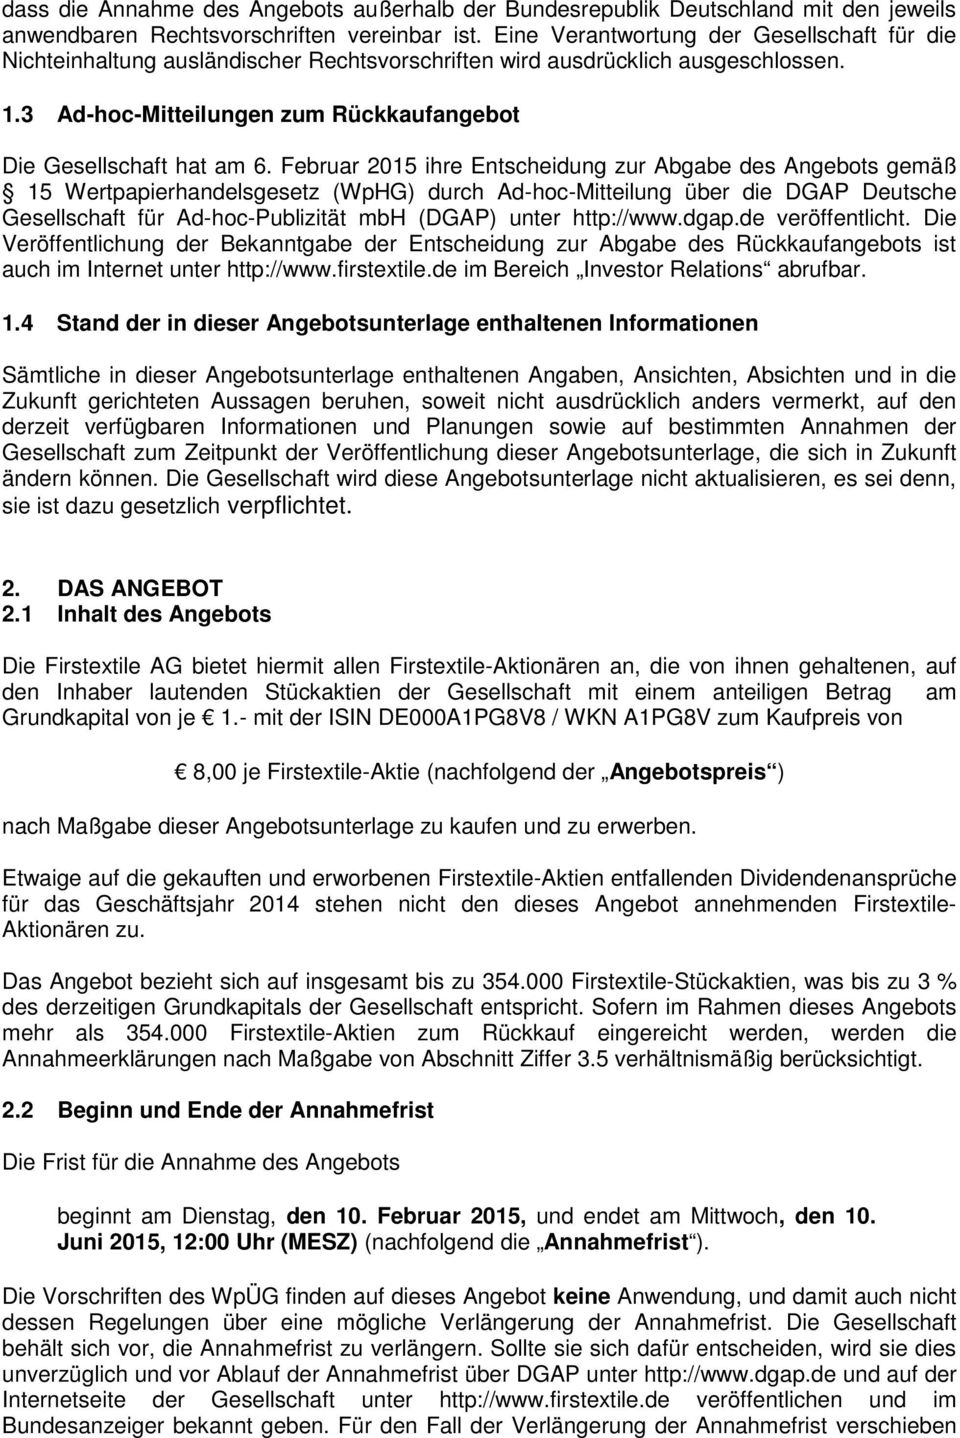 Februar 2015 ihre Entscheidung zur Abgabe des Angebots gemäß 15 Wertpapierhandelsgesetz (WpHG) durch Ad-hoc-Mitteilung über die DGAP Deutsche Gesellschaft für Ad-hoc-Publizität mbh (DGAP) unter